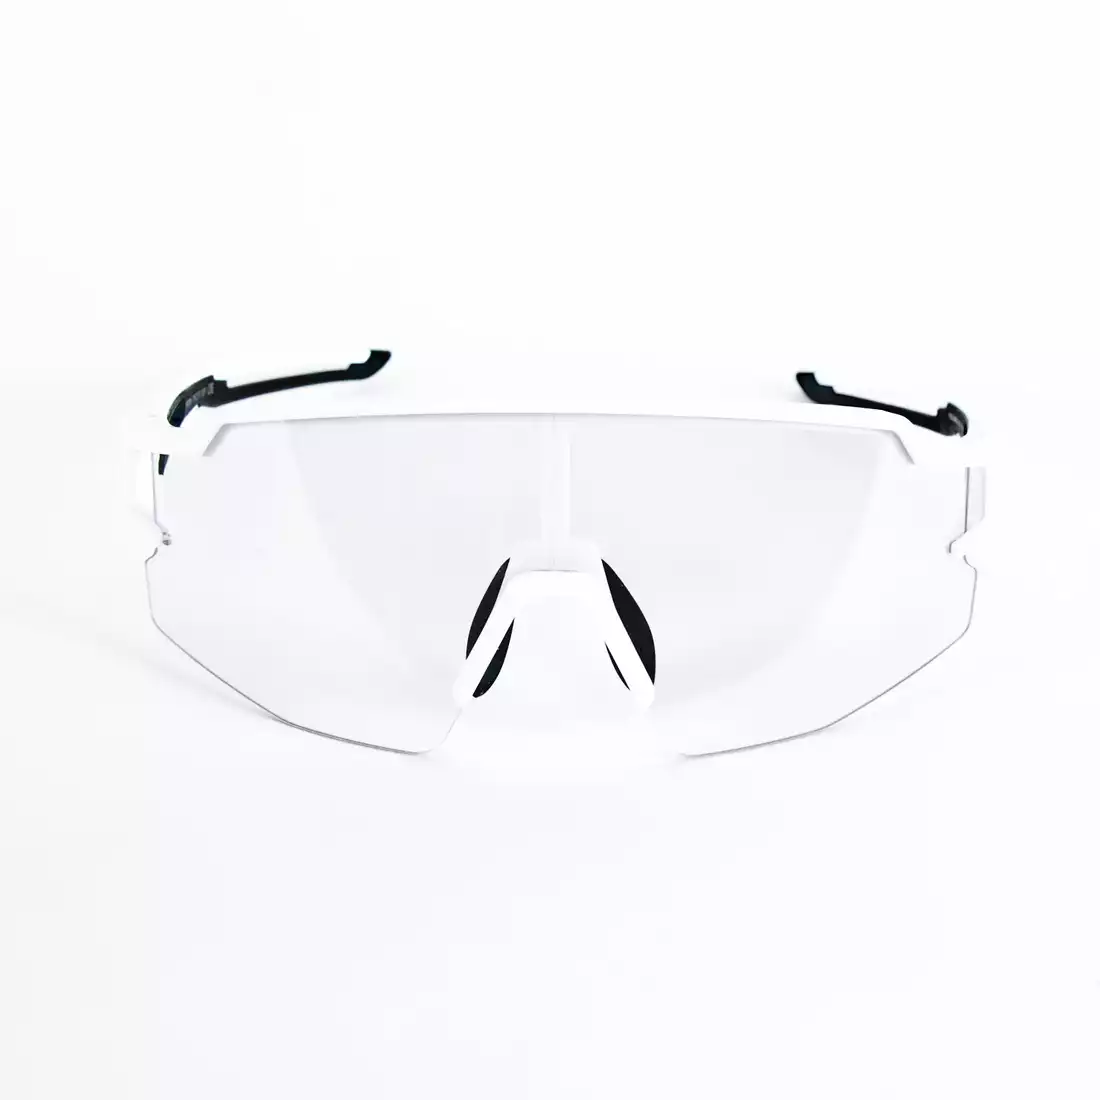 Rockbros 10172 okulary rowerowe / sportowe z fotochromem białe